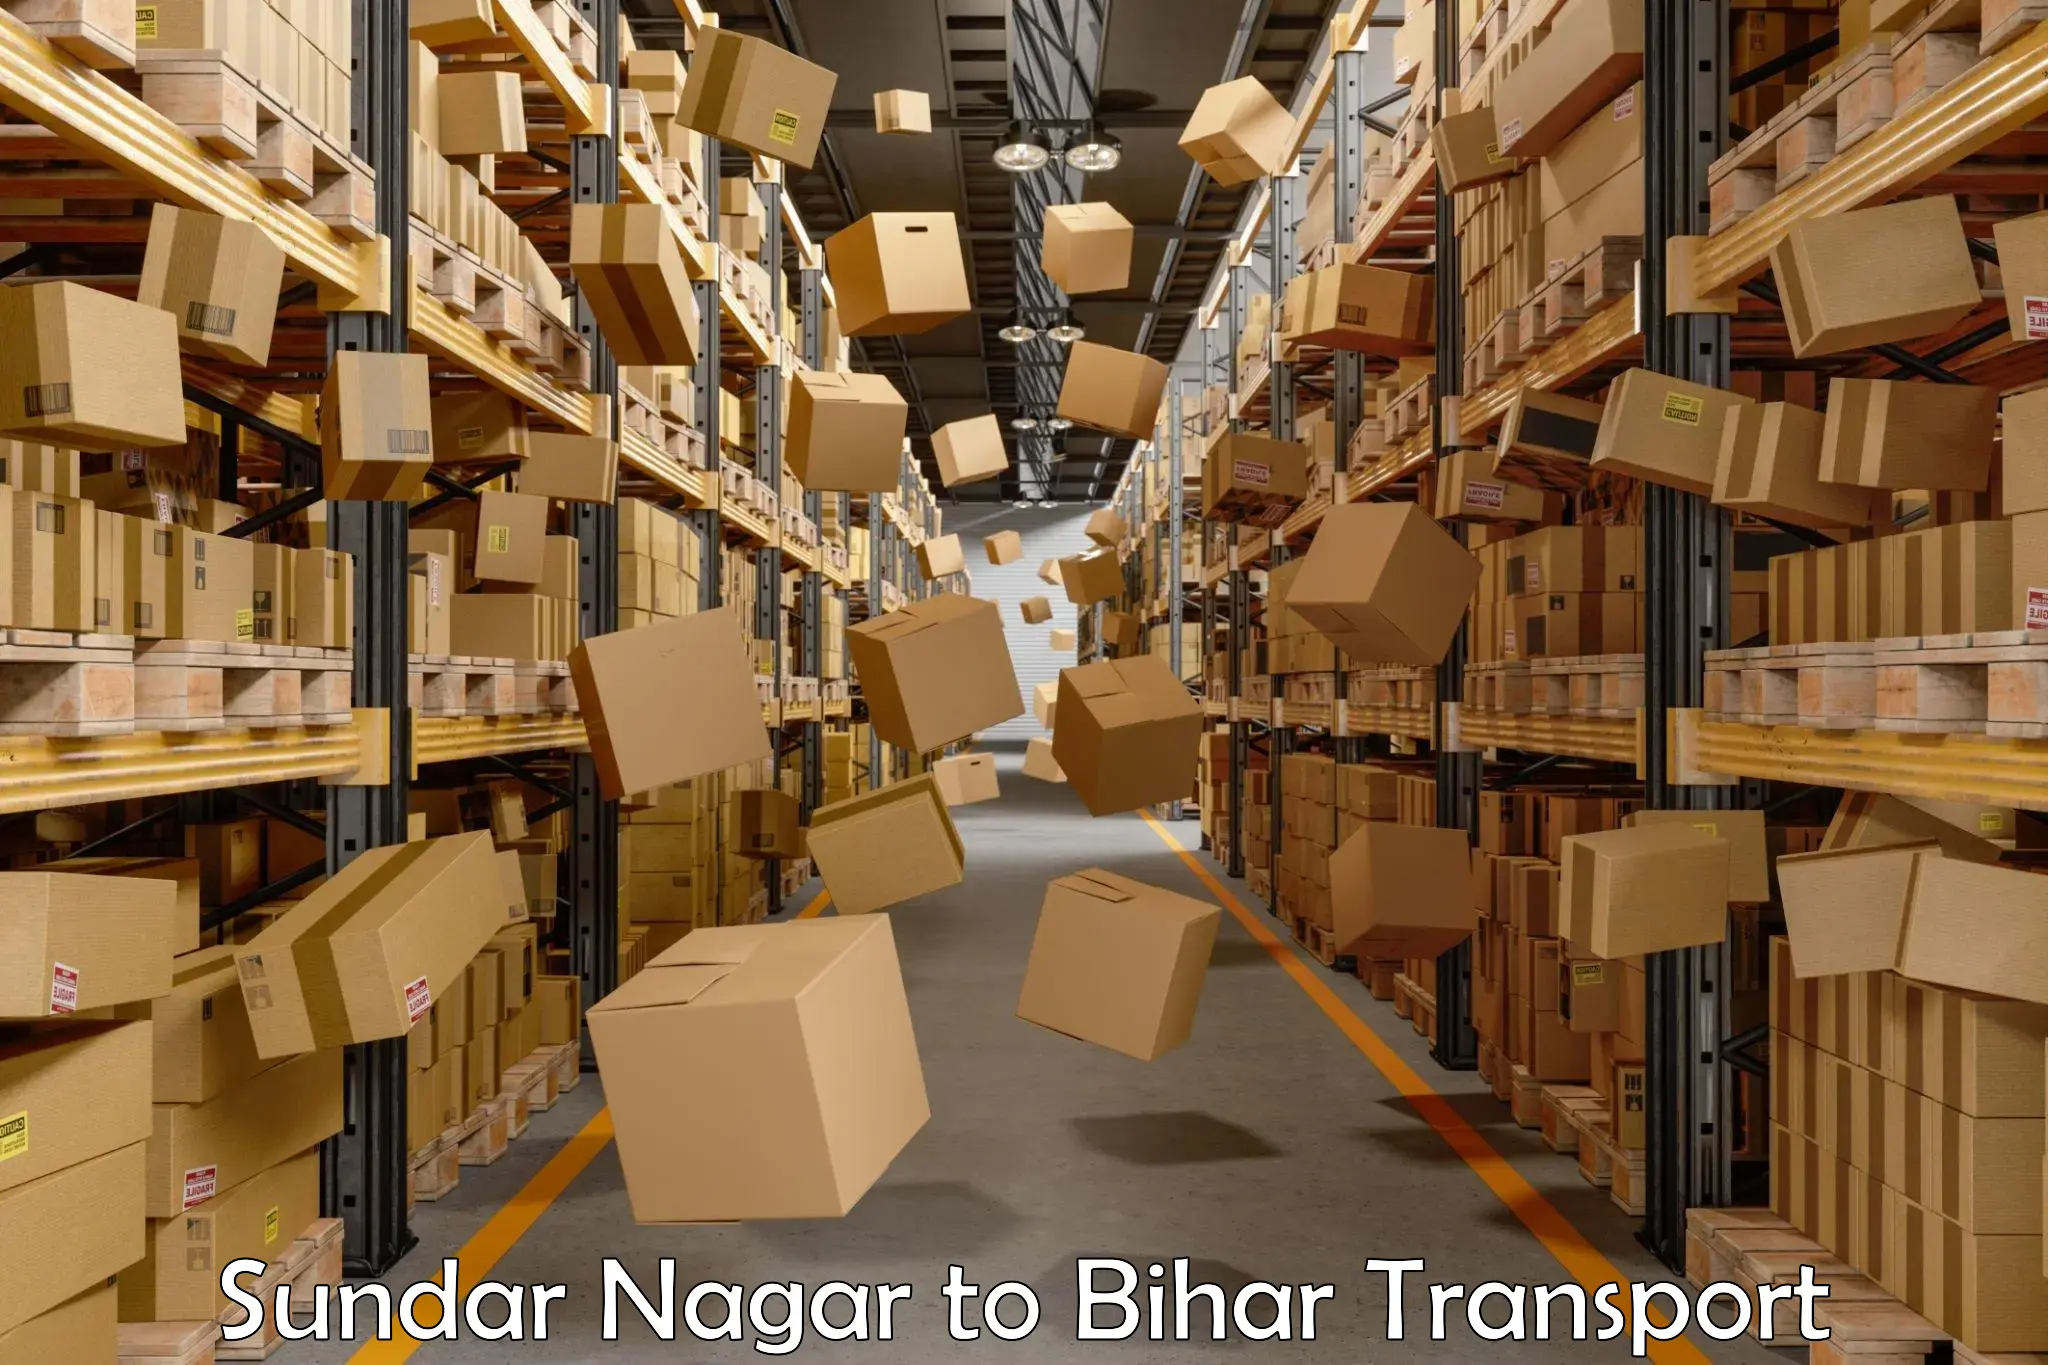 Commercial transport service Sundar Nagar to Patna